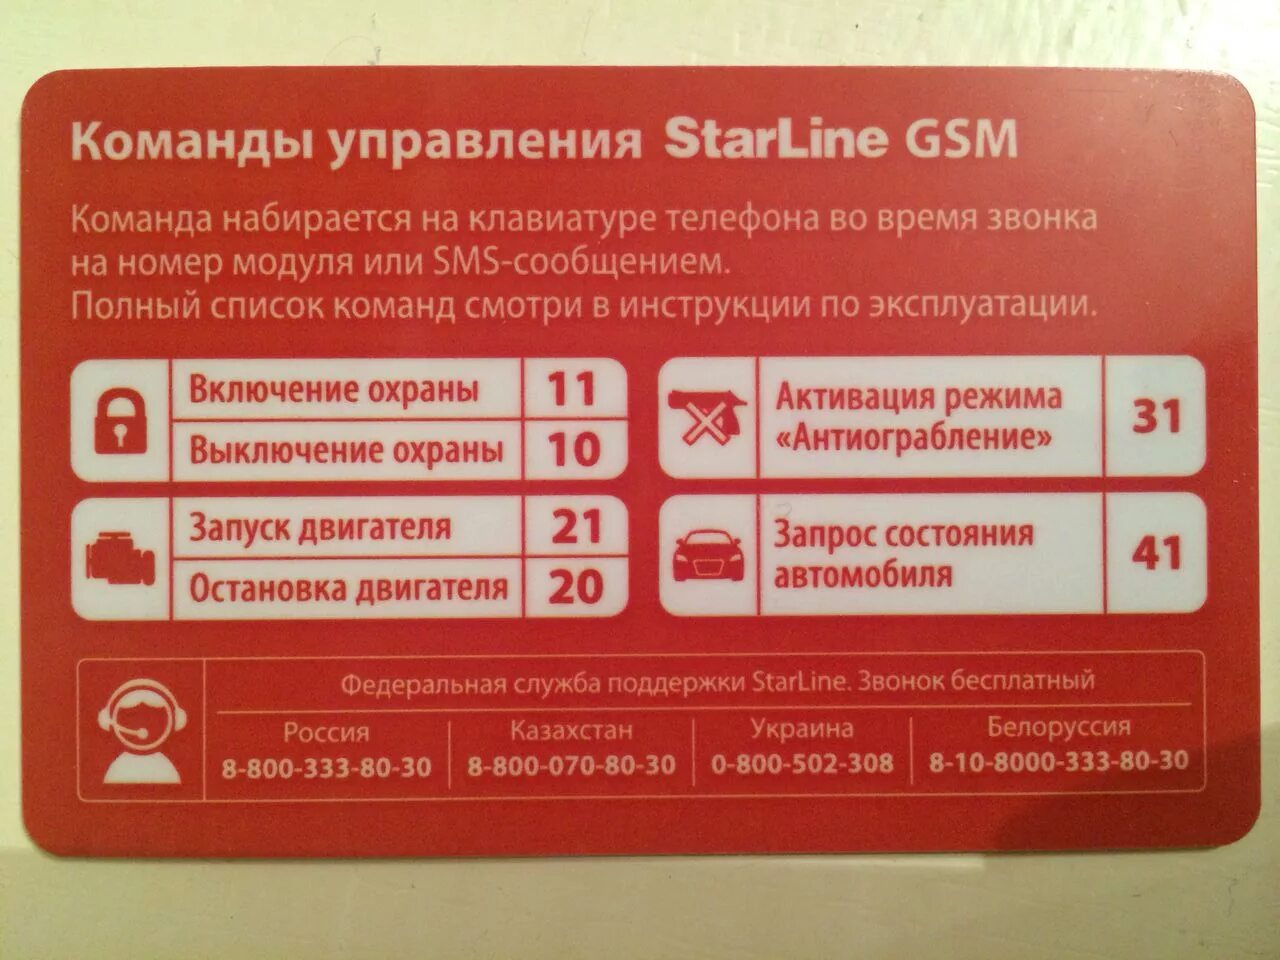 Старлайн техподдержка телефон. Старлайн а93 GSM модуль. Коды команд старлайн GSM а93. SMS команды STARLINE a93. Komandi upravleniya STARLINE GSM а93.